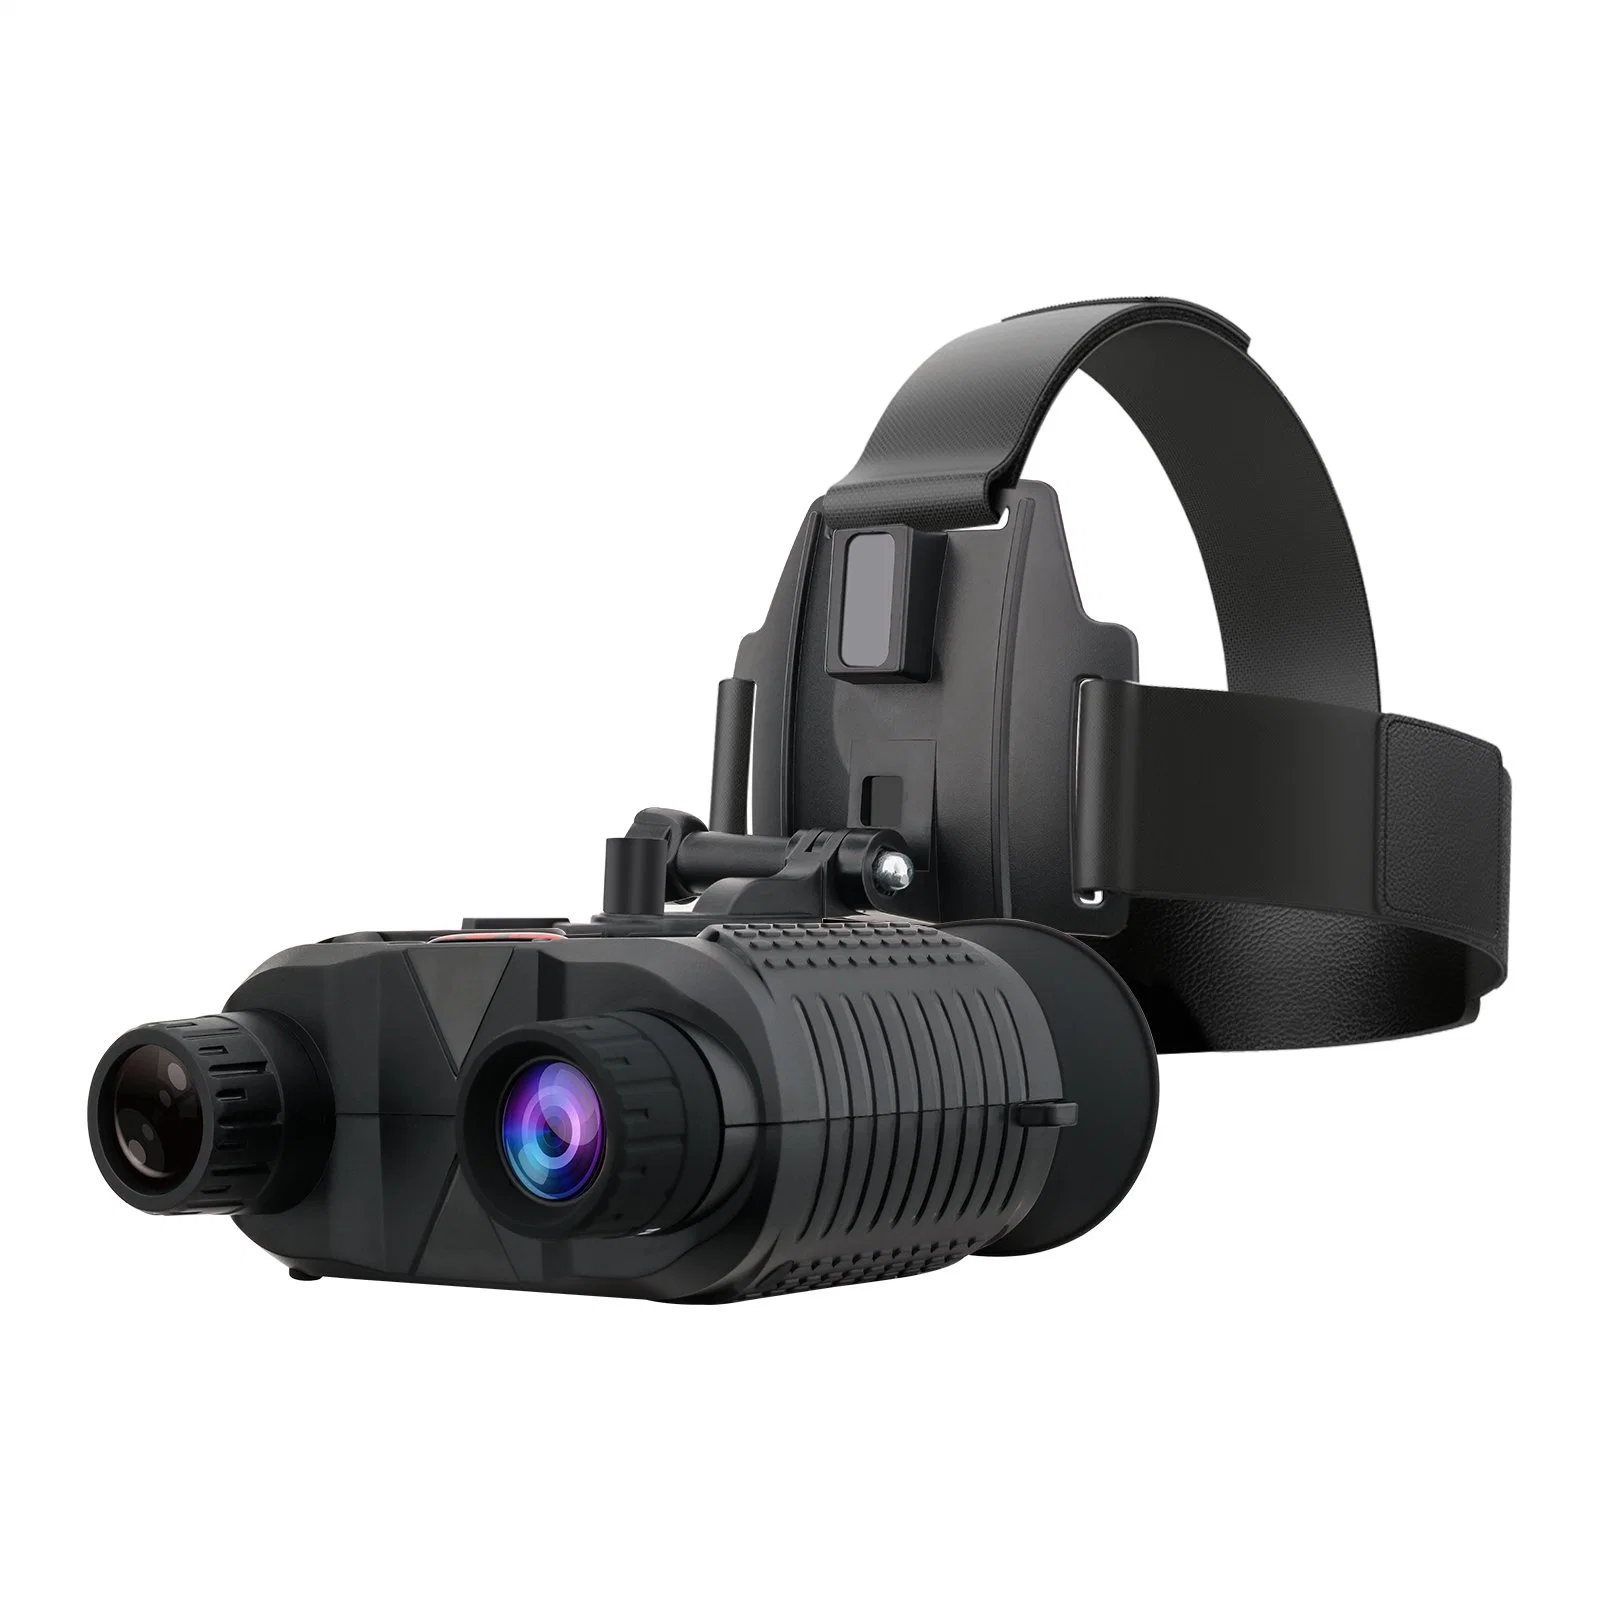 Gvda gafas prismáticos de visión nocturna infrarroja Dispositivo para la caza Camping Zoom 8x Telescopio montado en la cabeza el alcance de visión nocturna